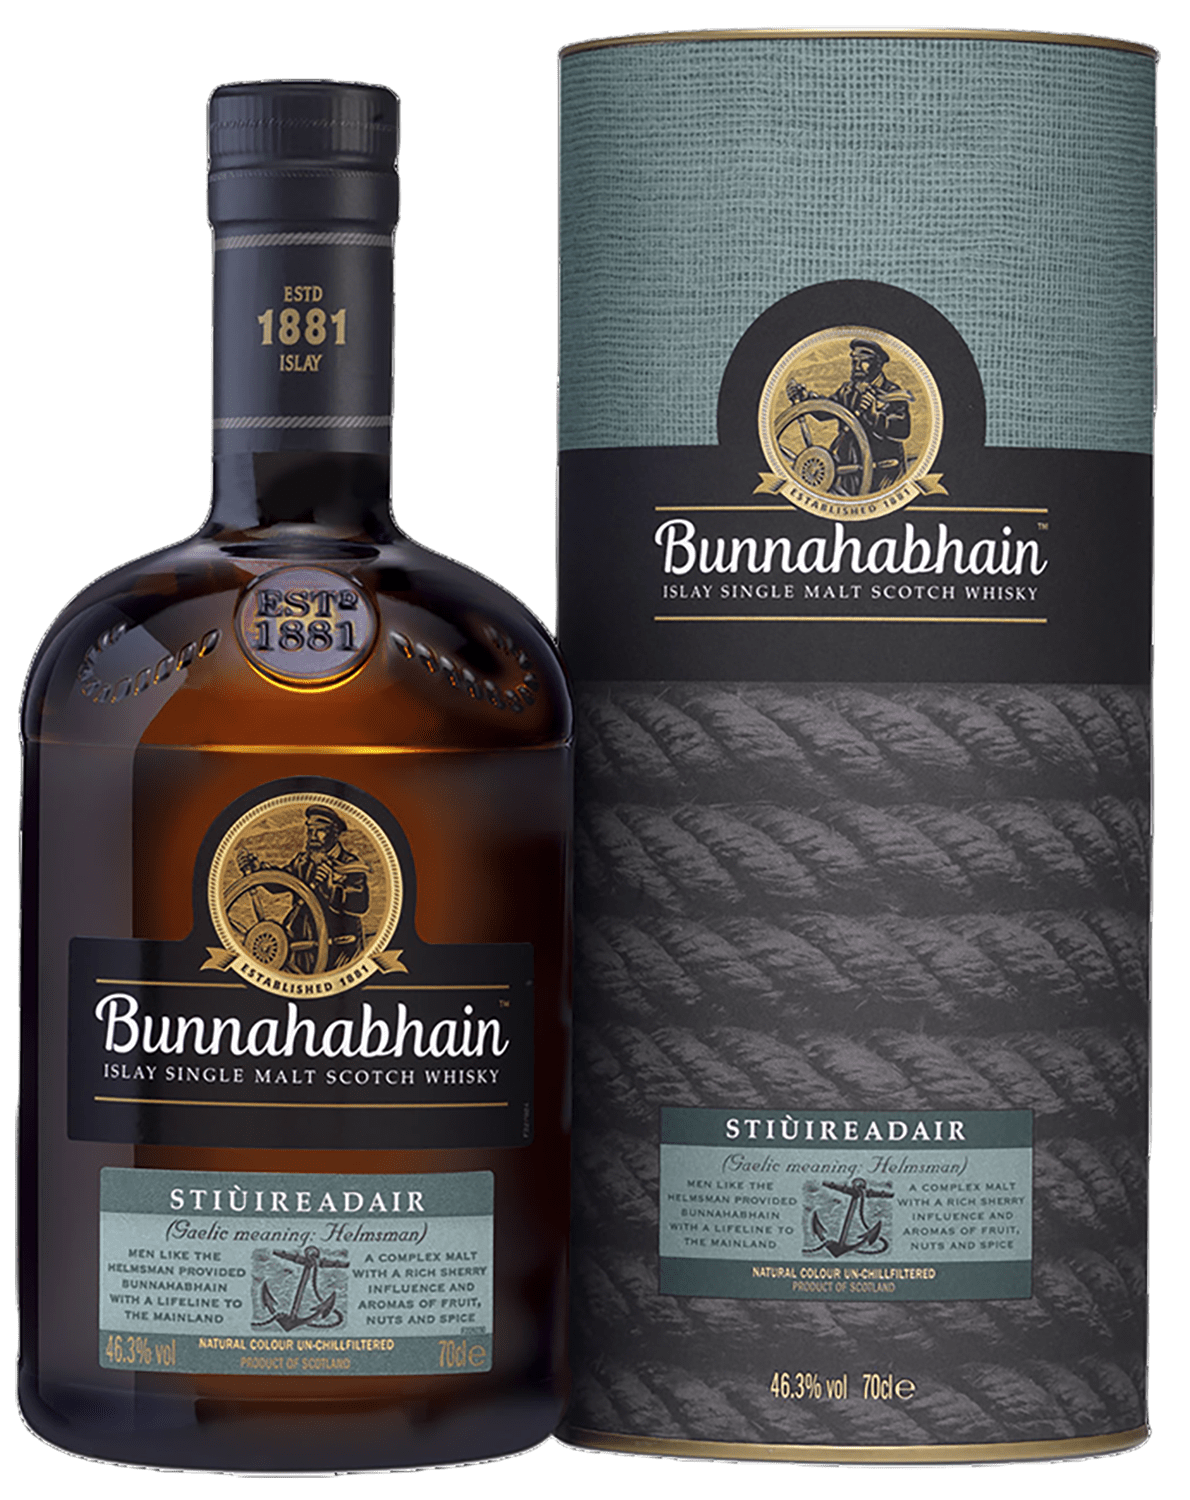 Bunnahabhain Stiuireadair Islay Single Malt Scotch Whisky (gift box) laphroaig islay single malt scotch whisky 10 y o gift box with 2 glasses